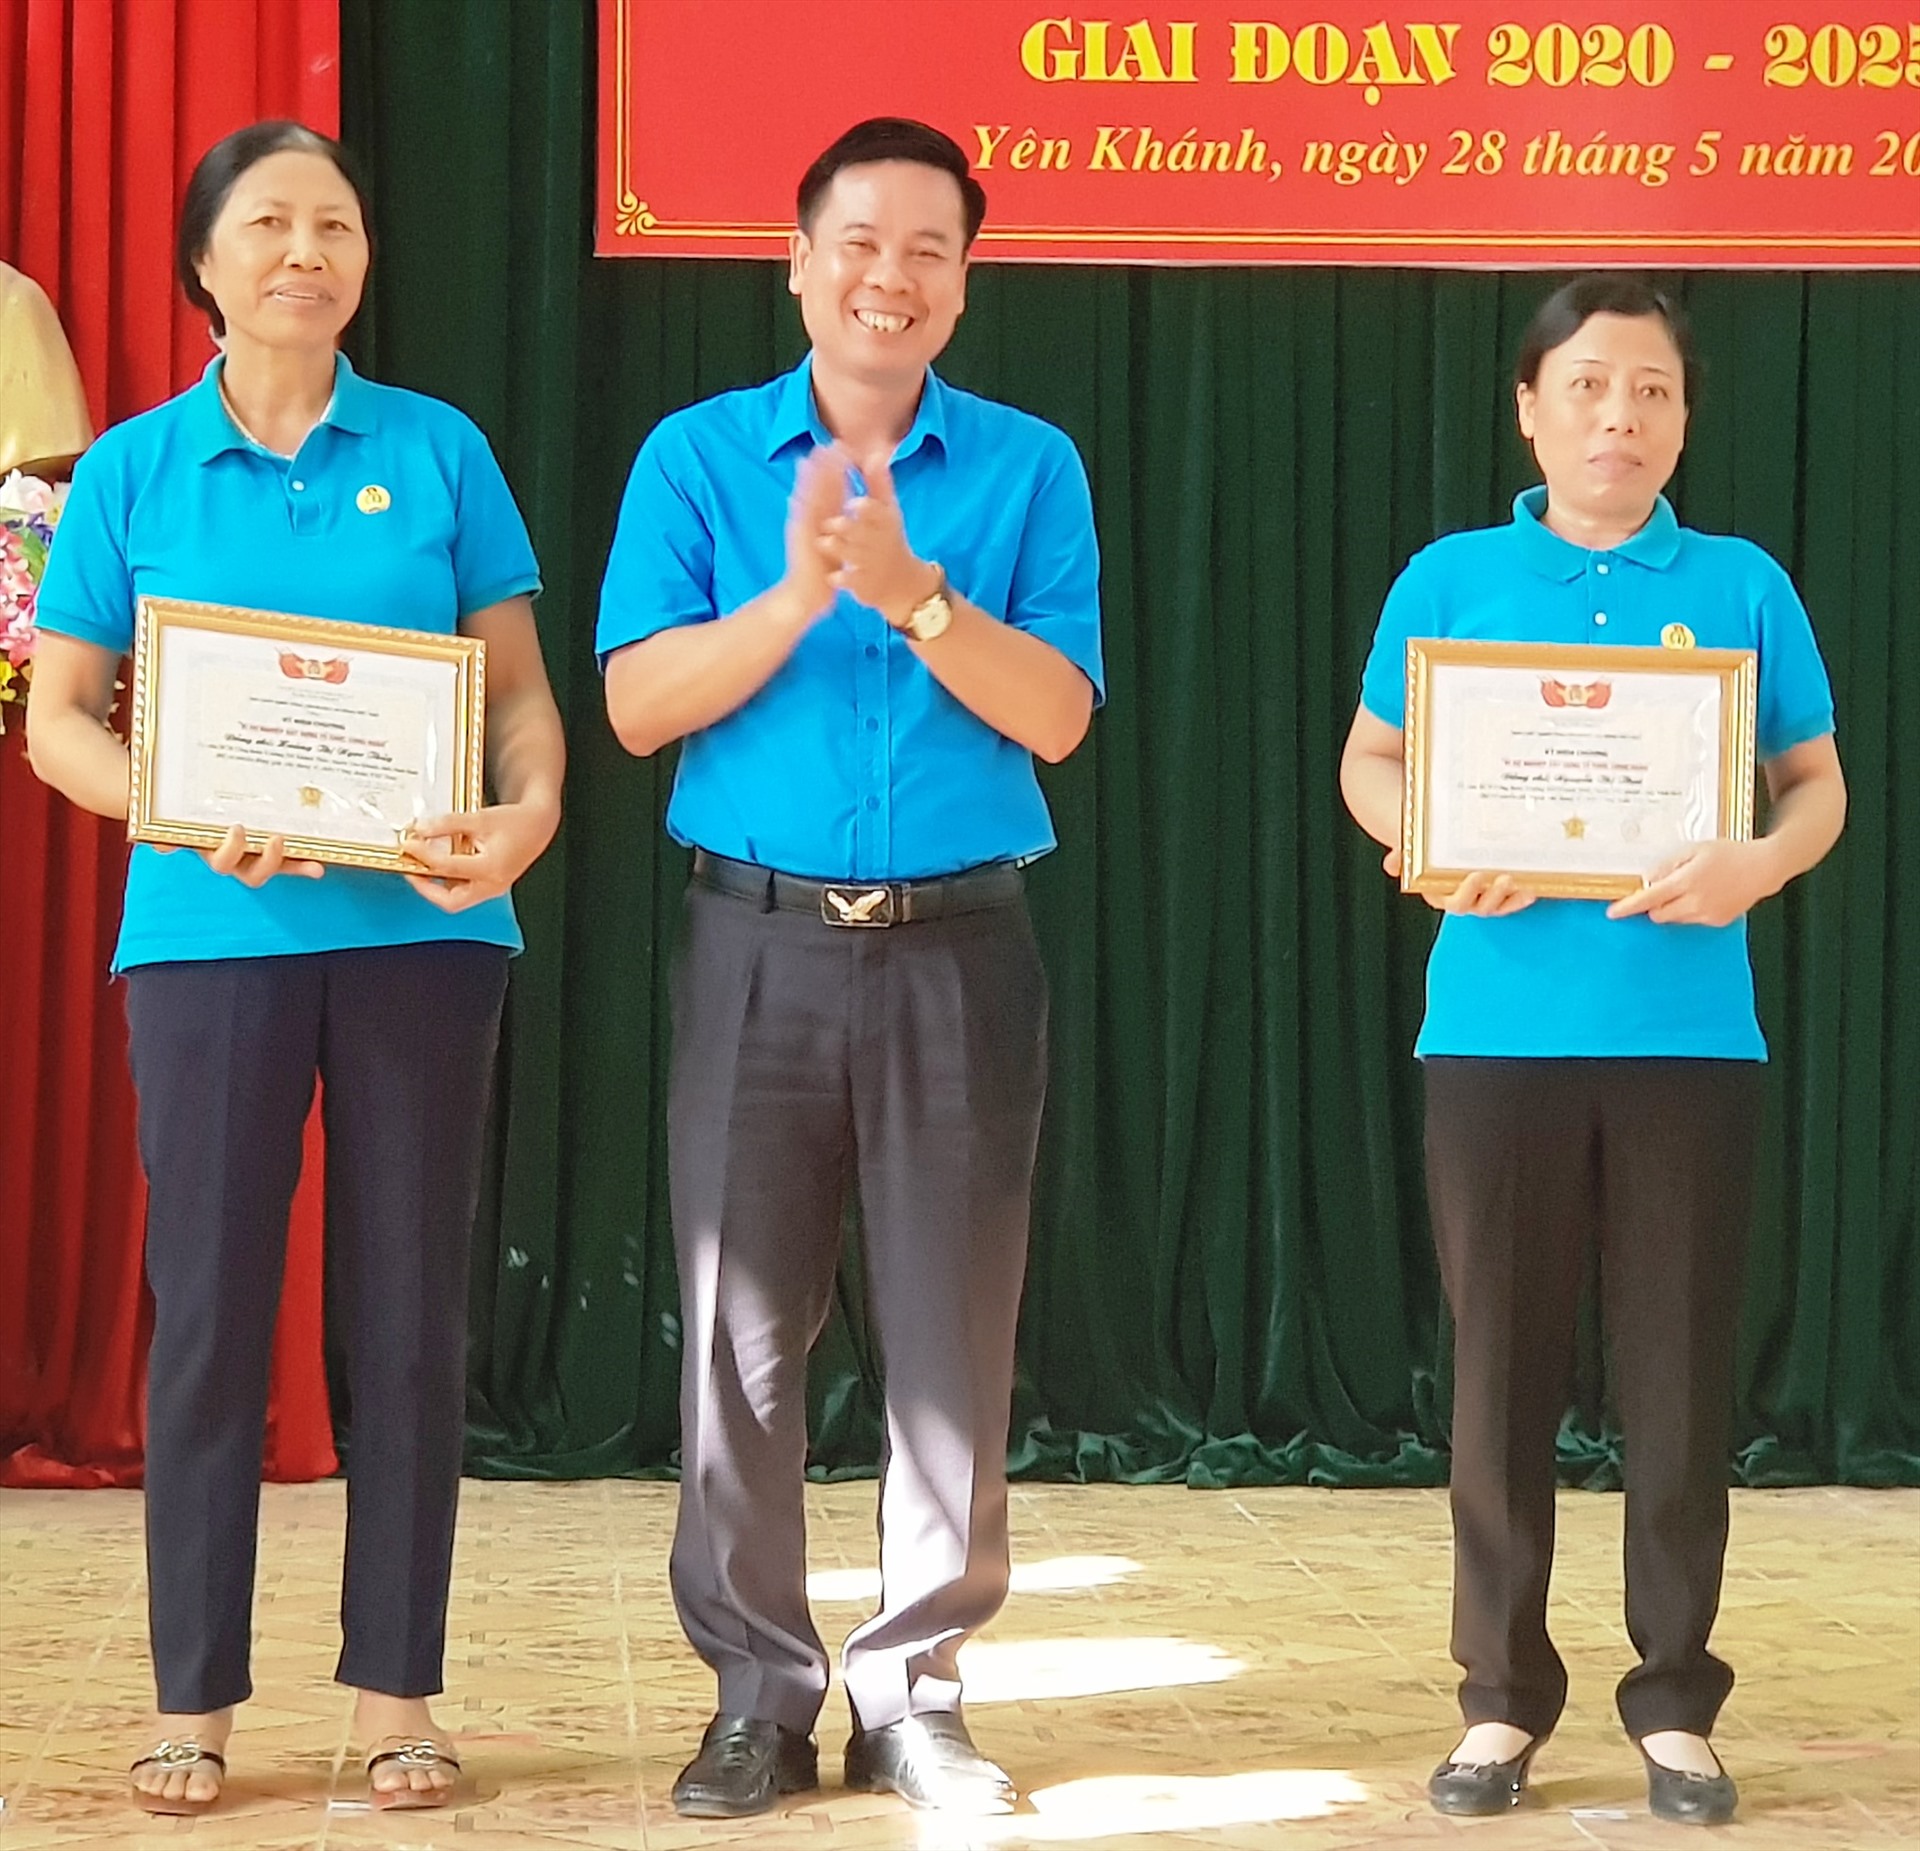 Ông Dương Đức Khanh, Chủ tịch LĐLĐ tỉnh Ninh Bình trao Kỷ niệm chương vì sự nghiệp xây dựng công đoàn cho 2 cá nhân tiêu biểu. Ảnh: NT